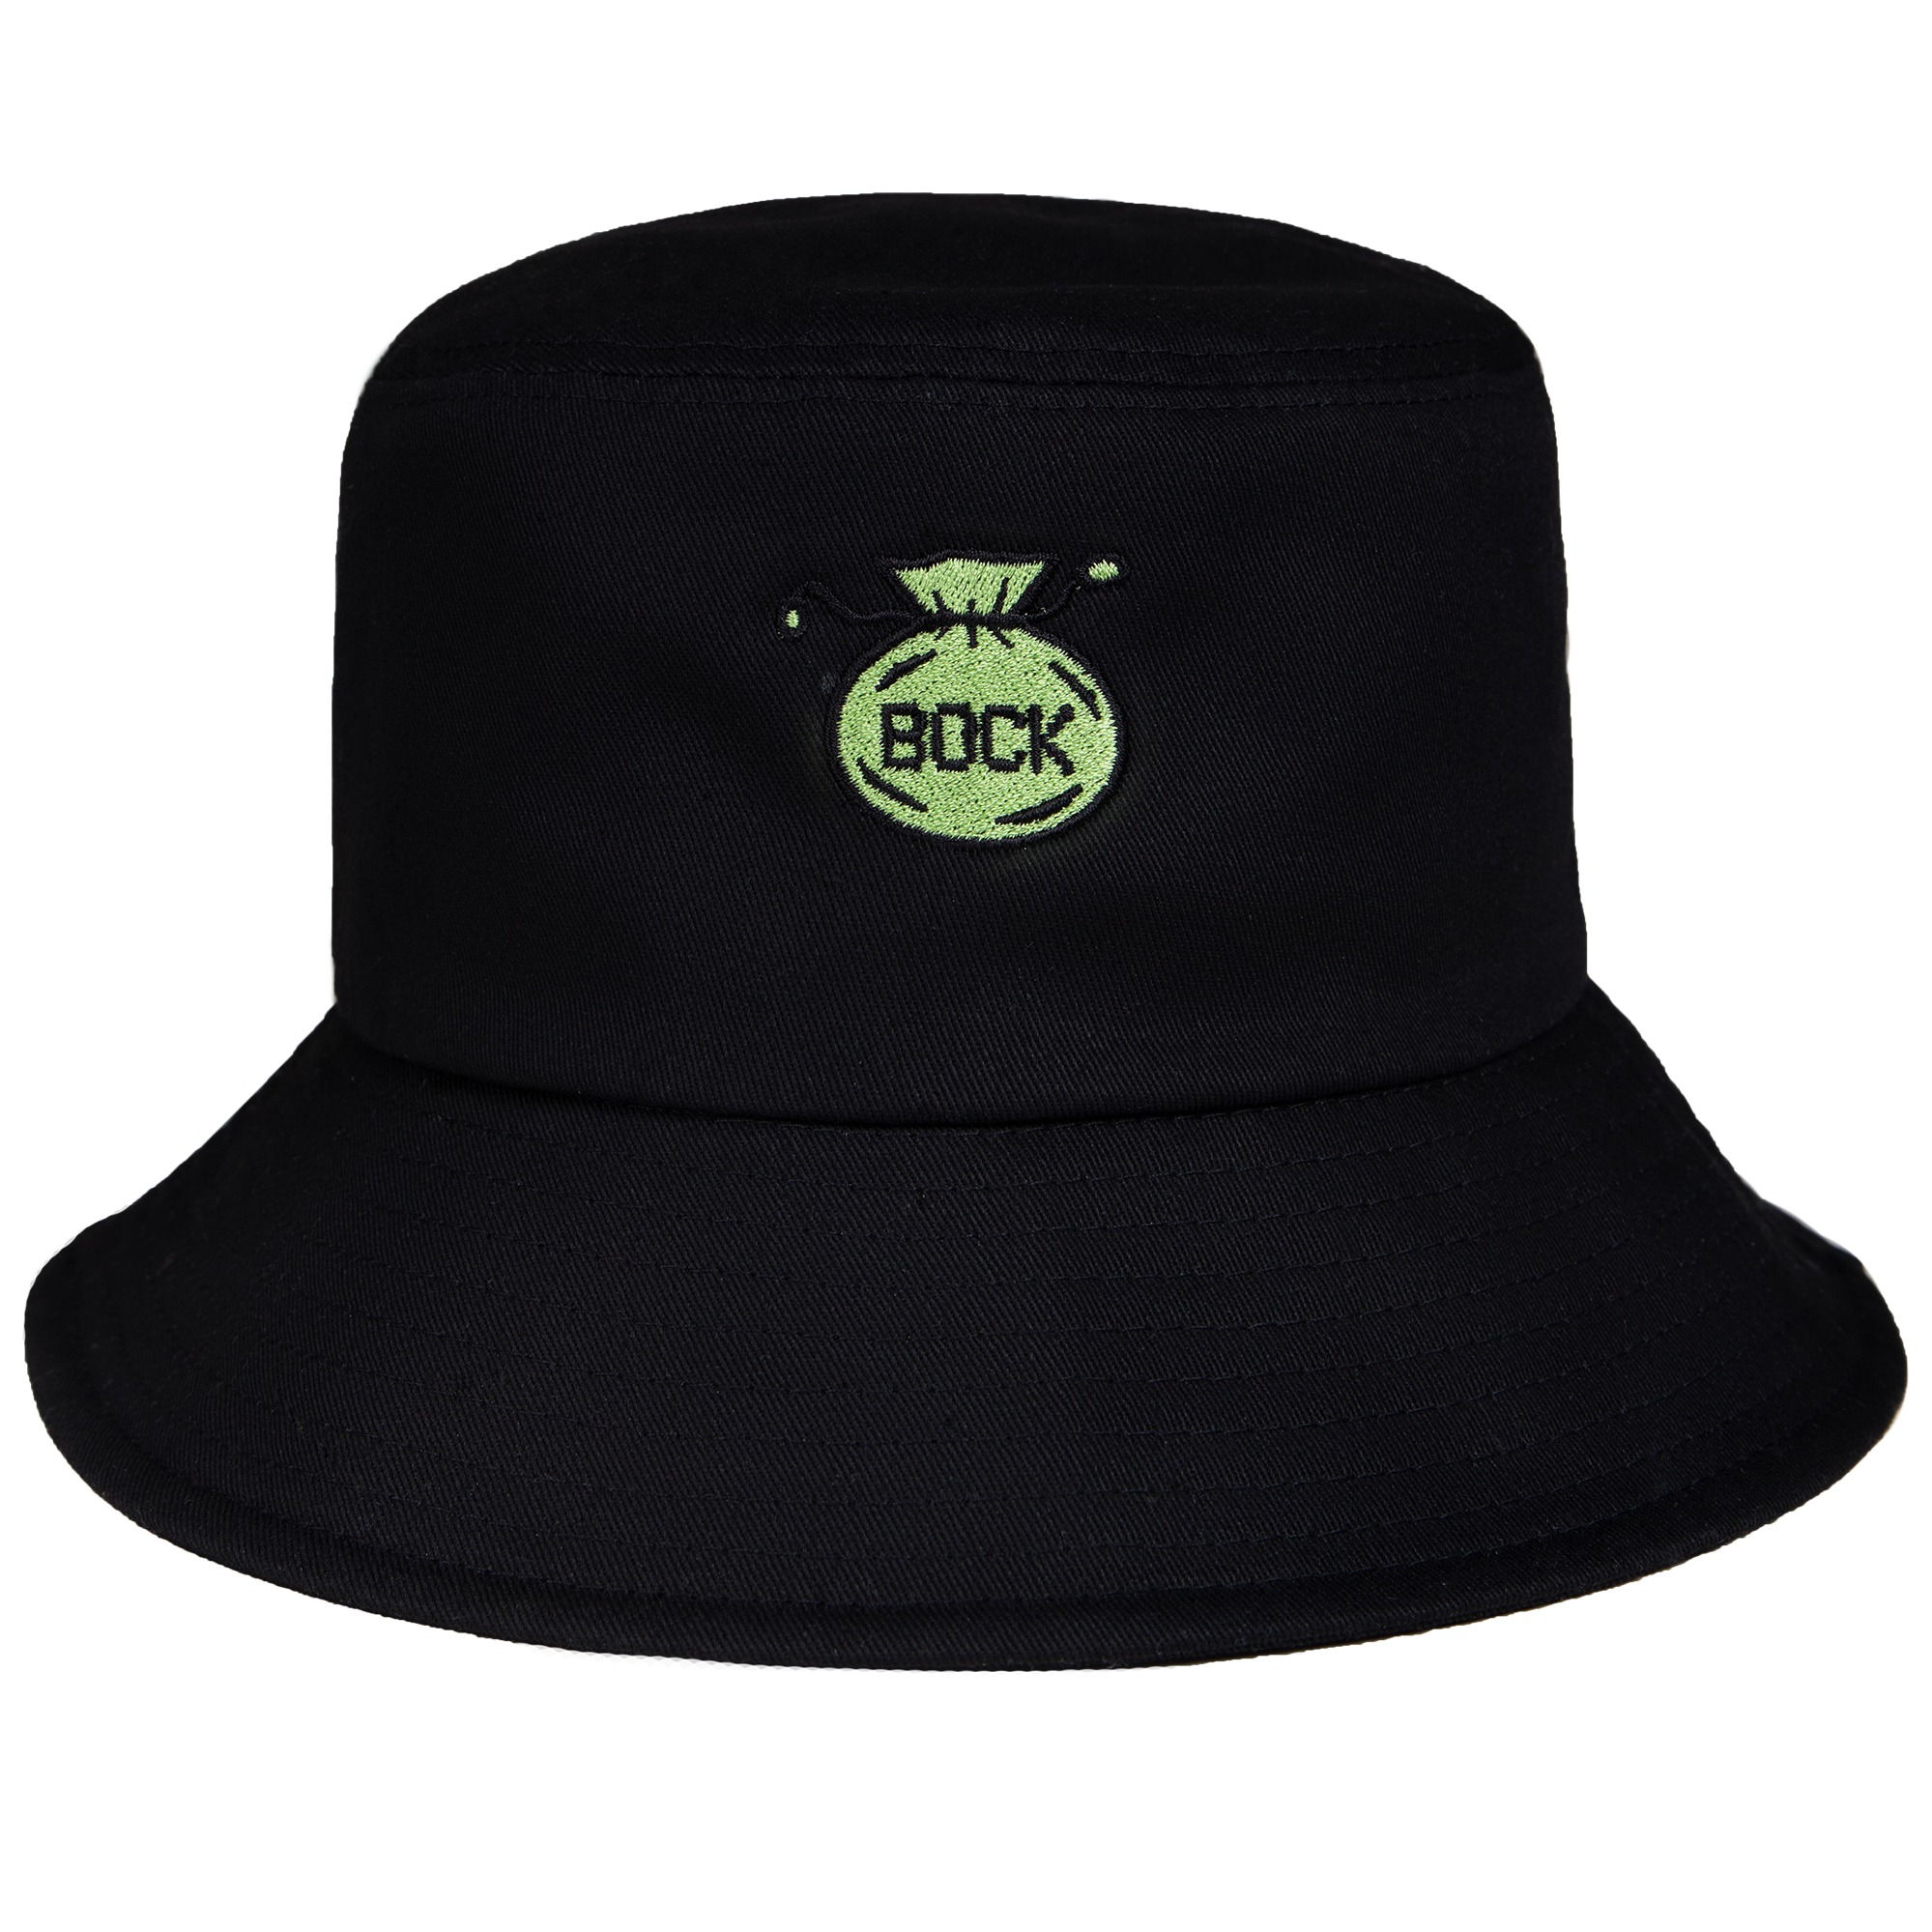 bock bucket hat